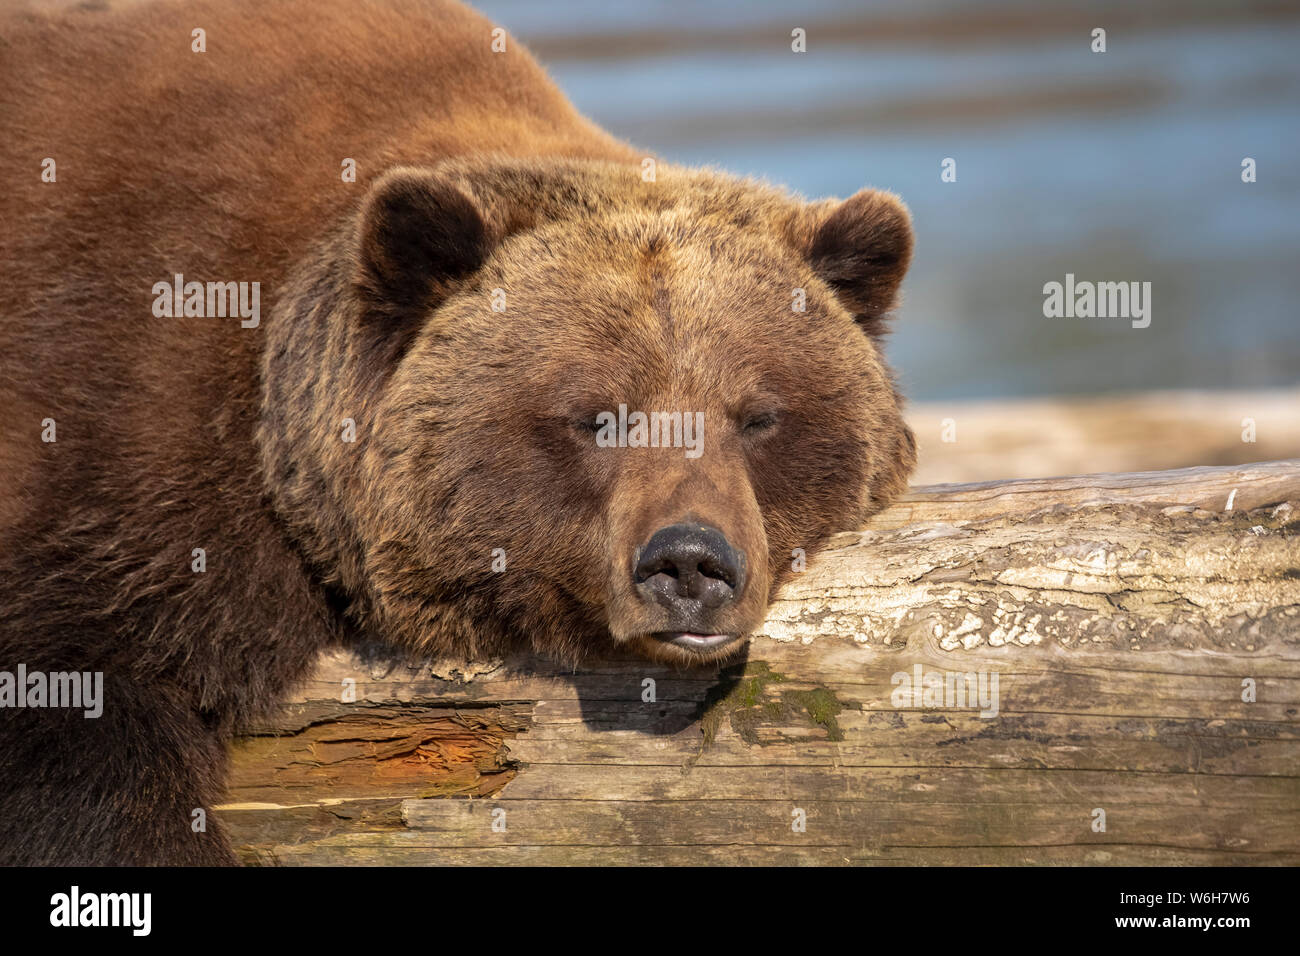 Une femelle captive d'ours brun (Ursus arctos) repose et dort sur une bûche de bois flotté au Centre de conservation de la faune de l'Alaska avec un étang dans le... Banque D'Images